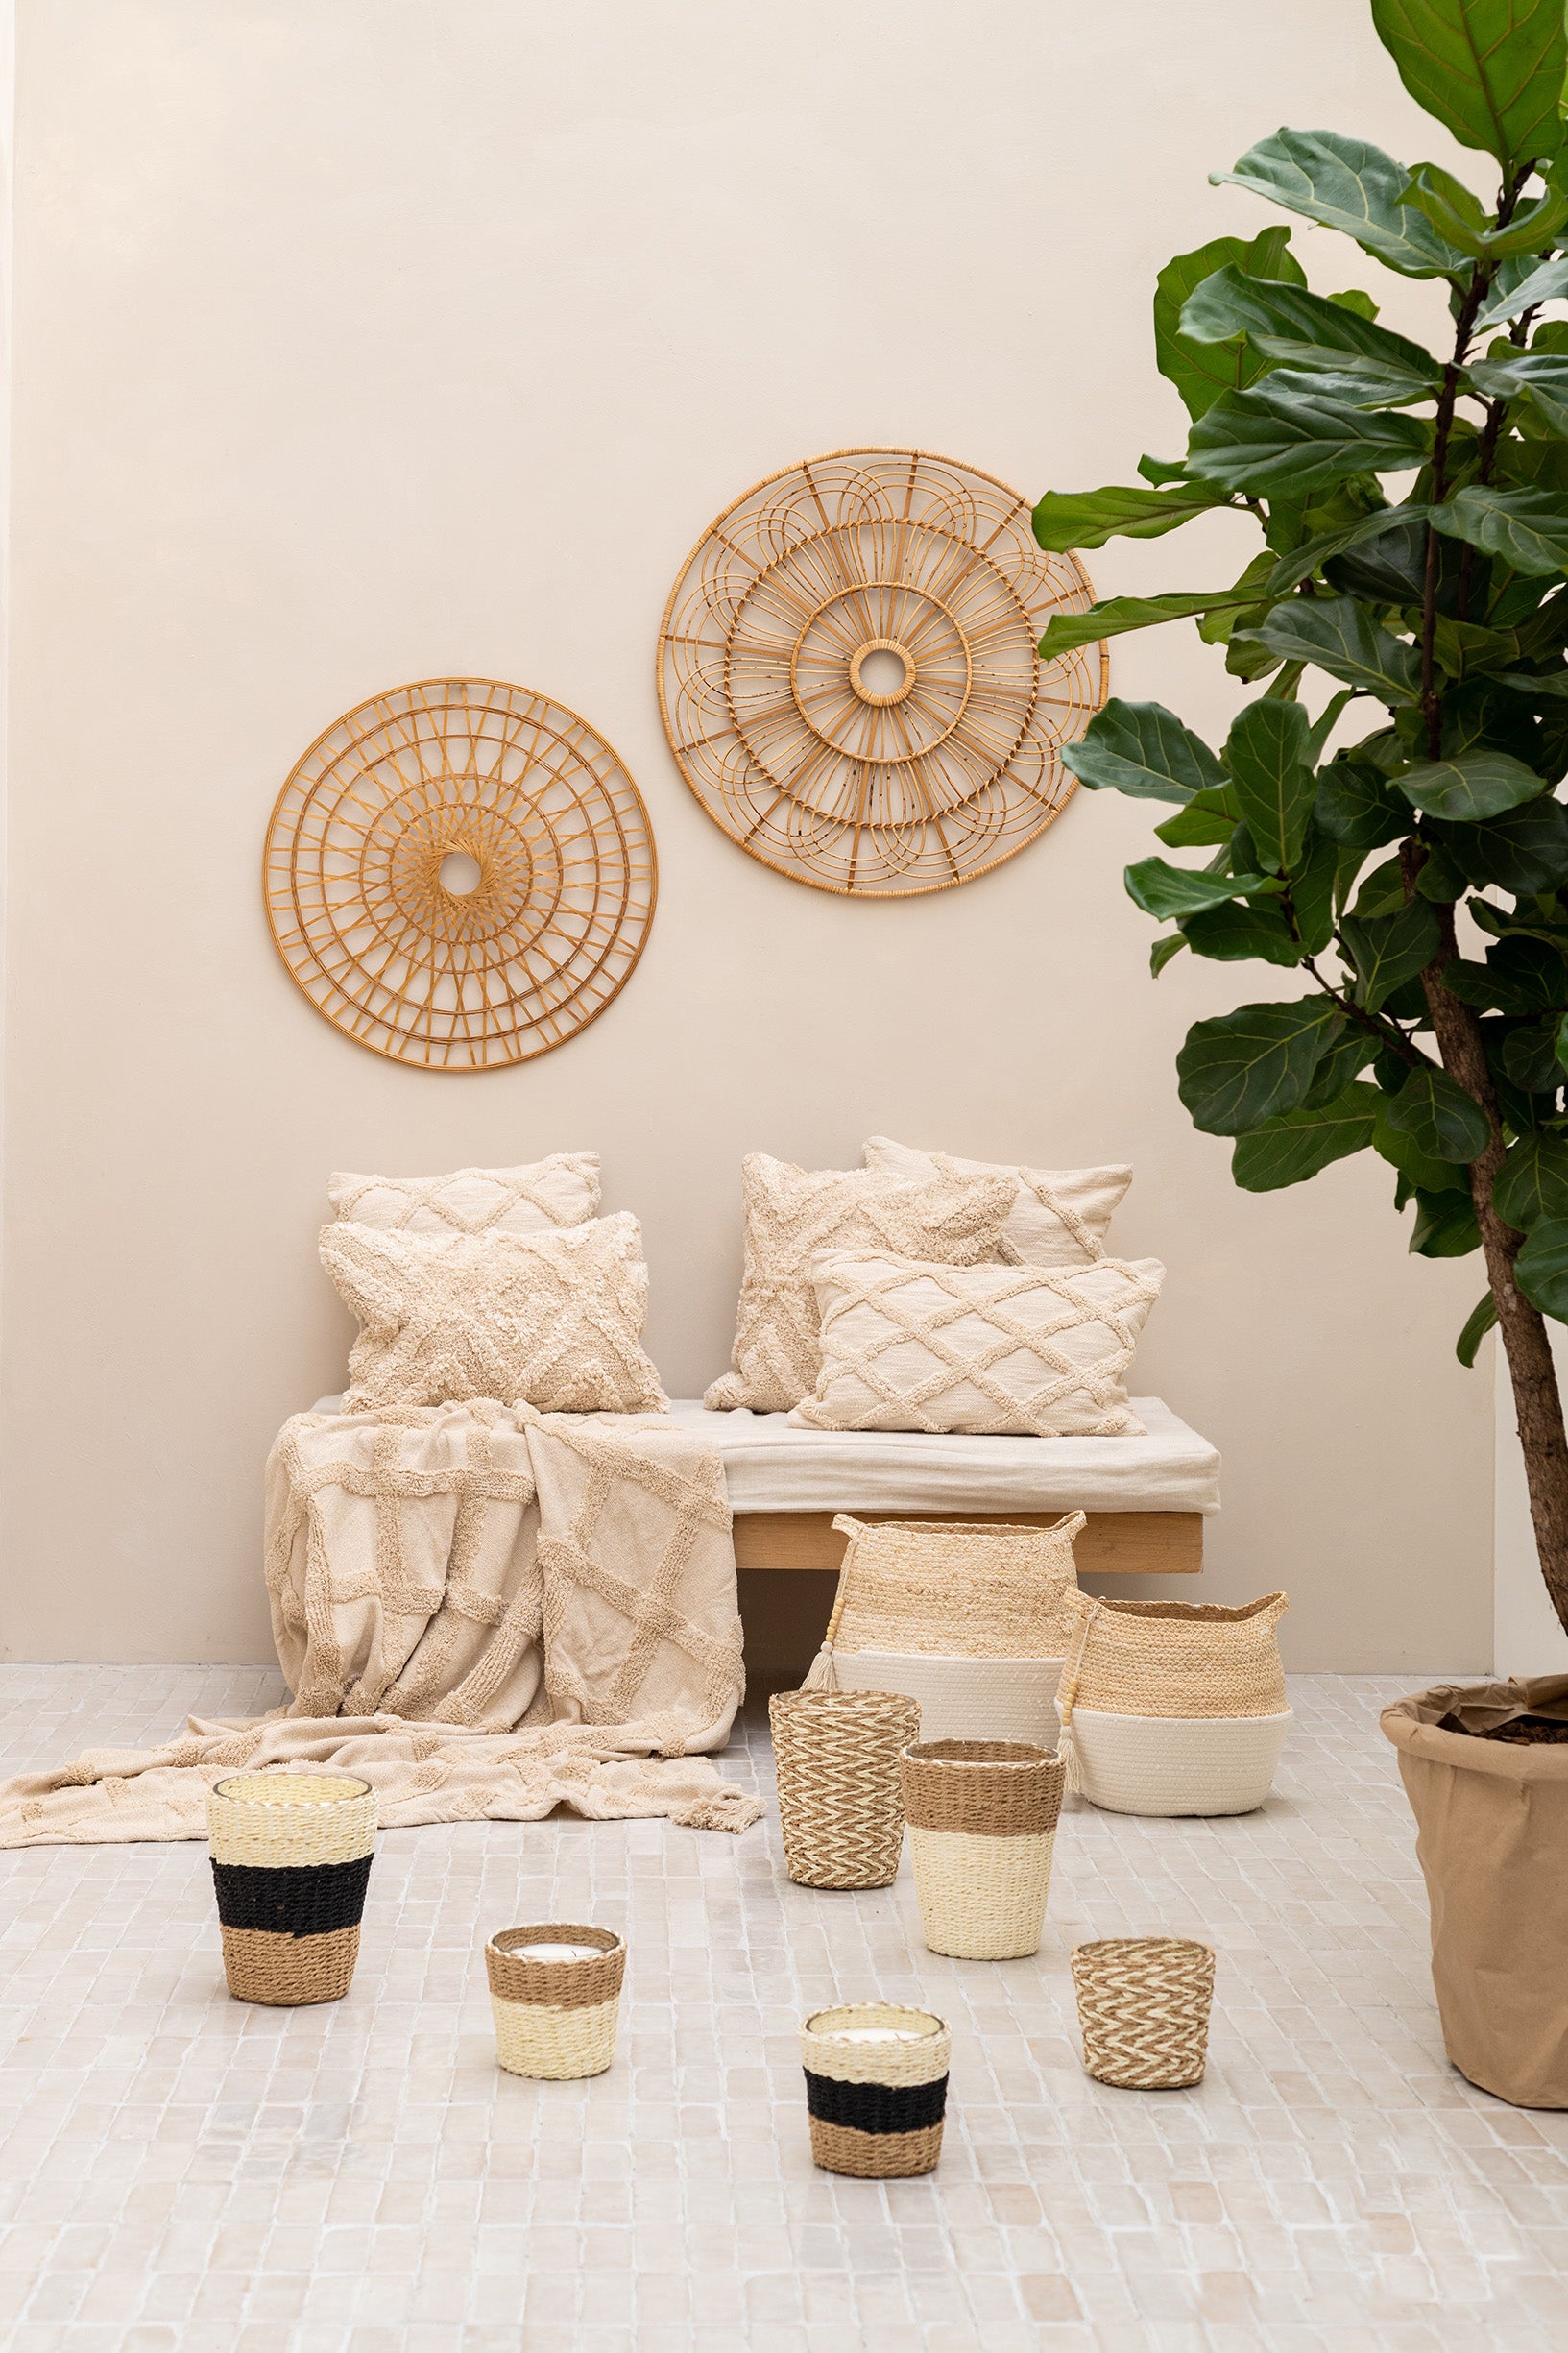 Kissen aus Baumwolle in creme weiß mit 3D Rautenmuster auf Sitzbank mit Dekoration im Boho Design